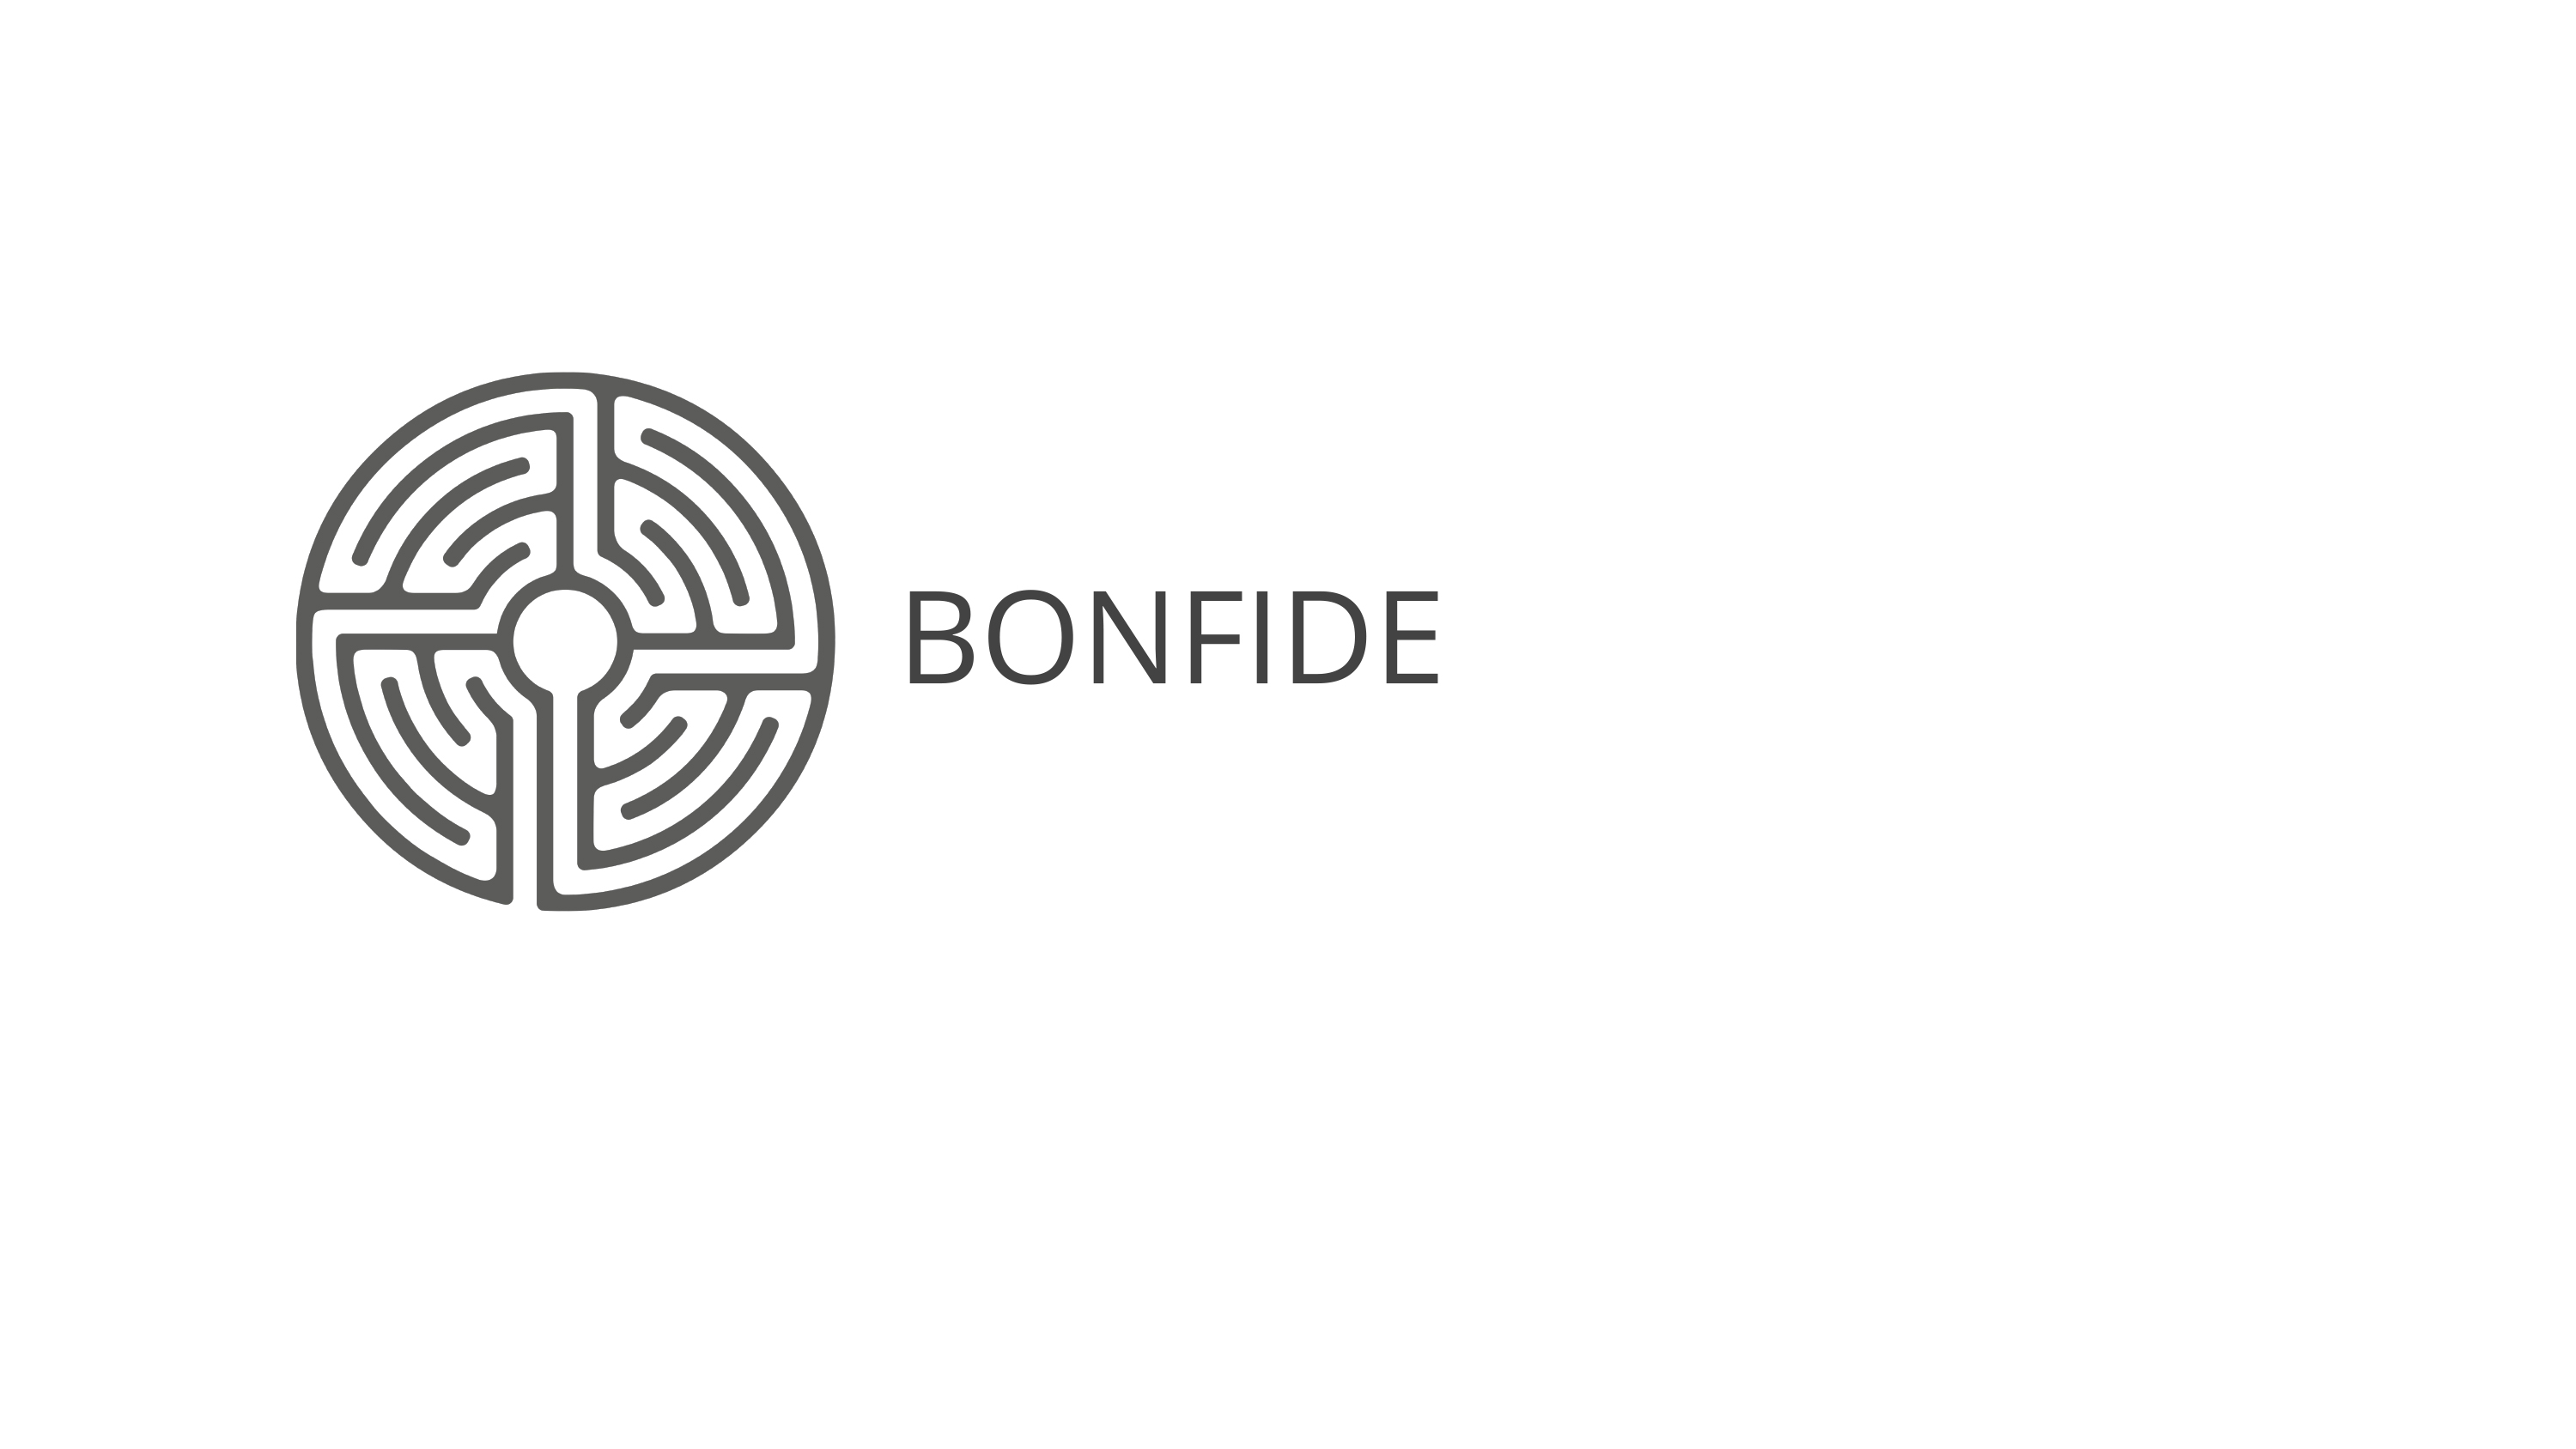 logo-bonfide.jpg (455 KB)